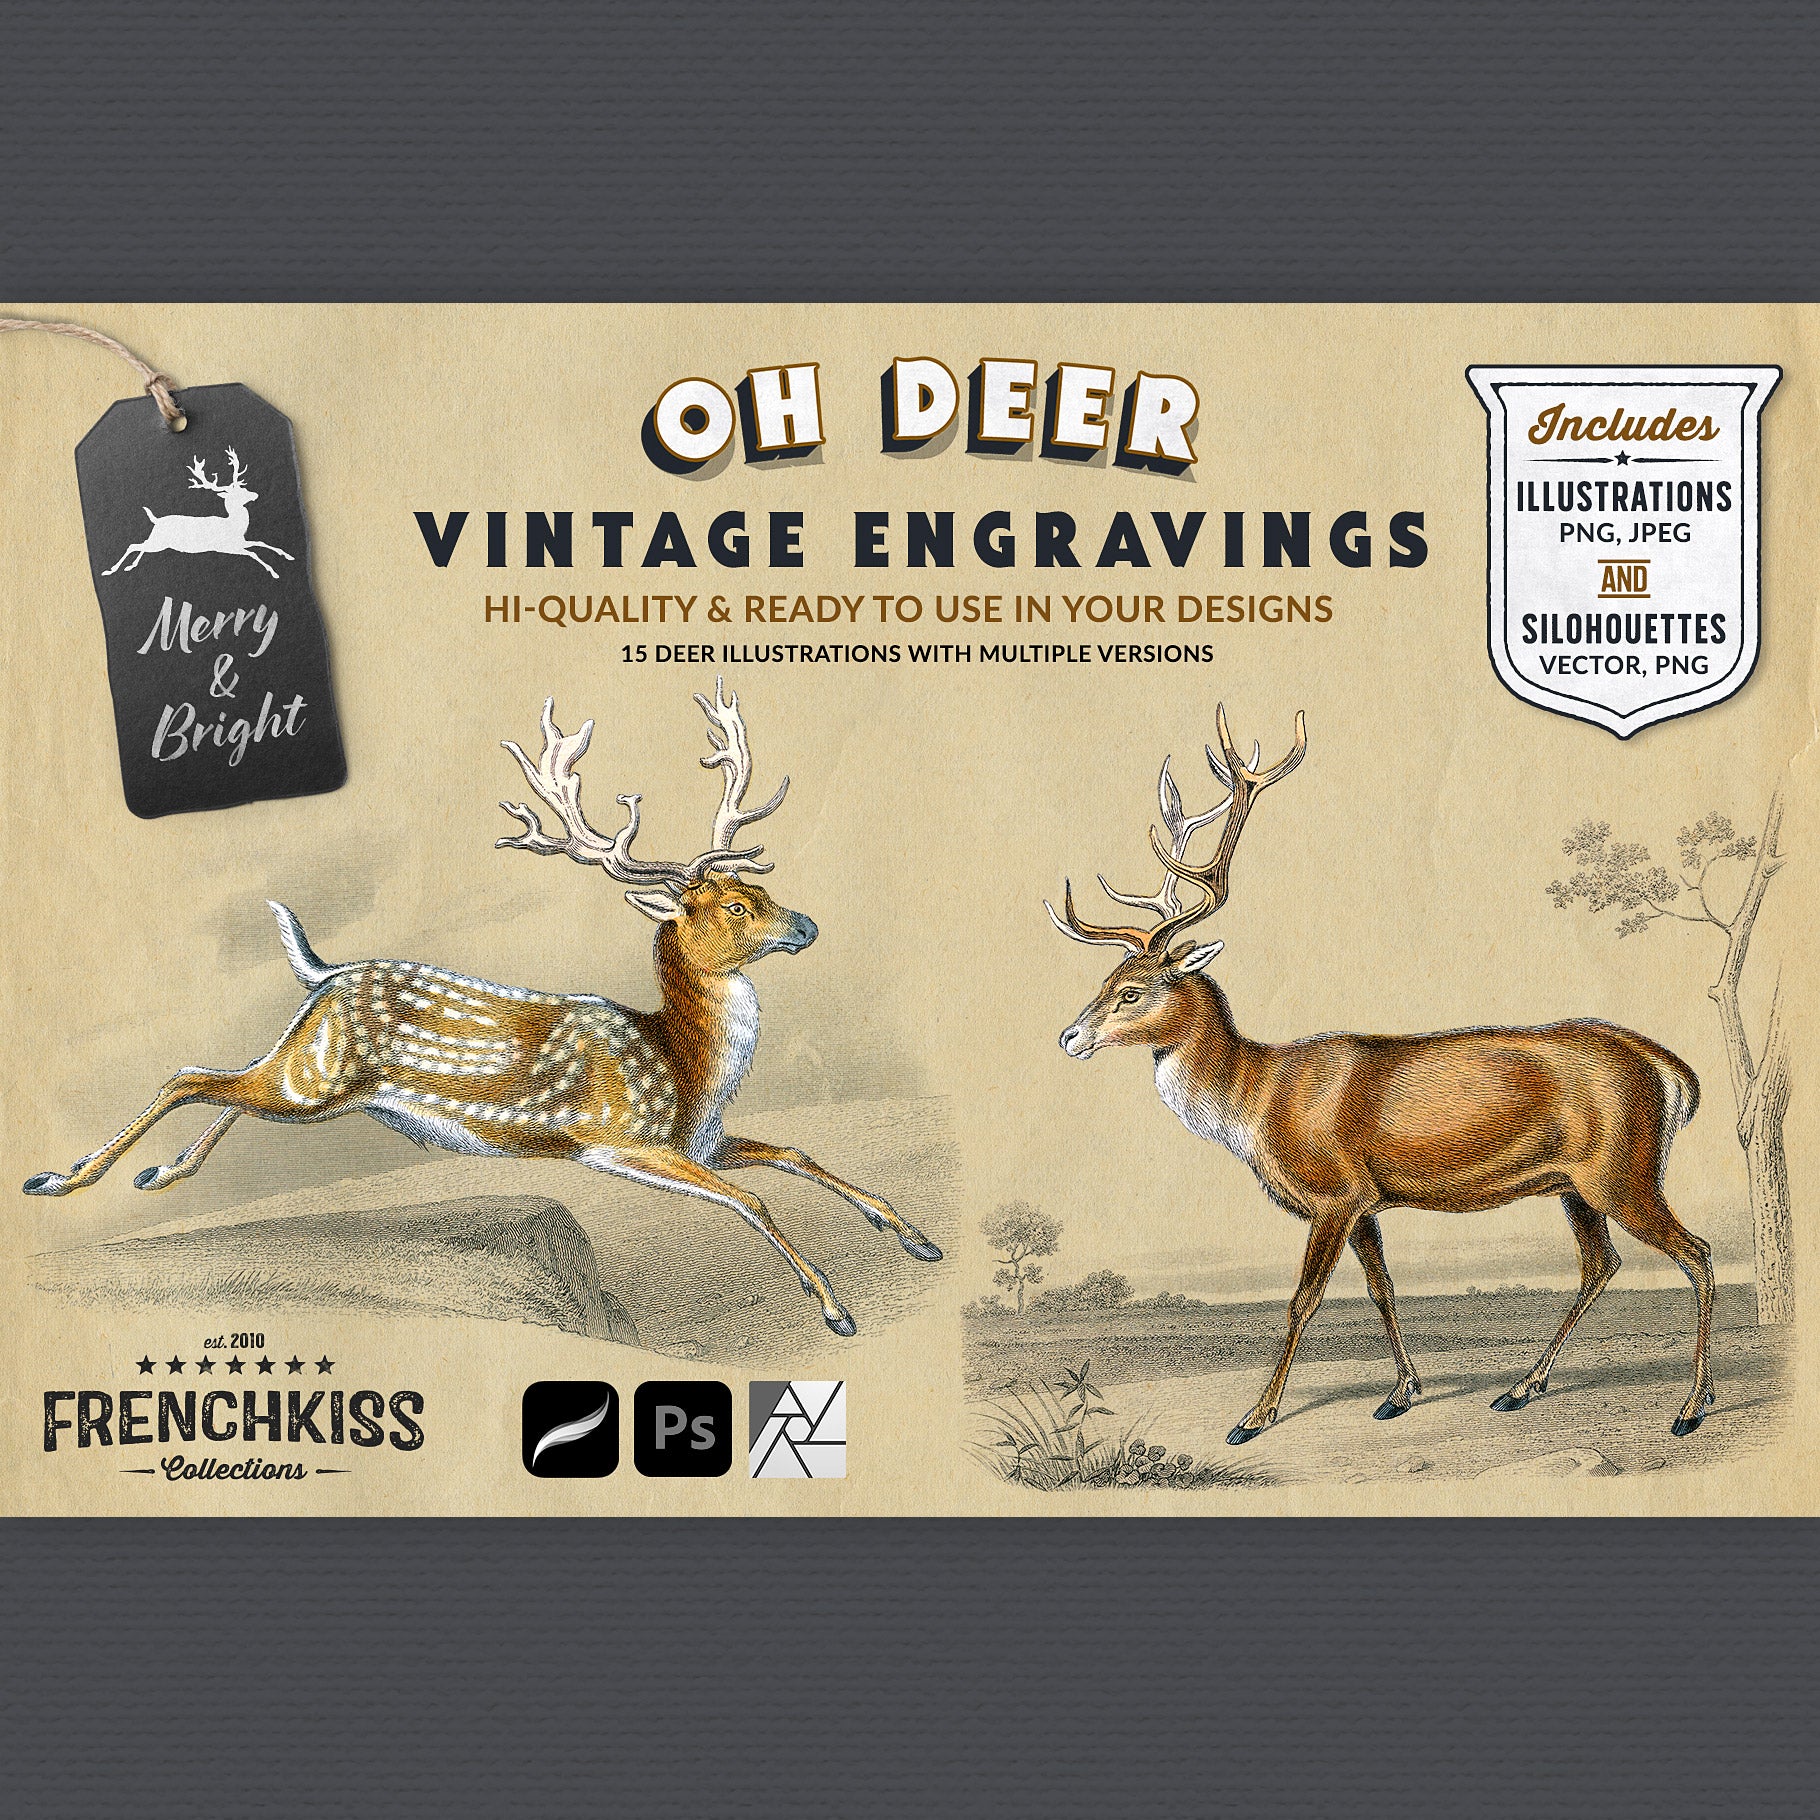 Oh Deer Vintage Engraving Illustration Graphics extended license.